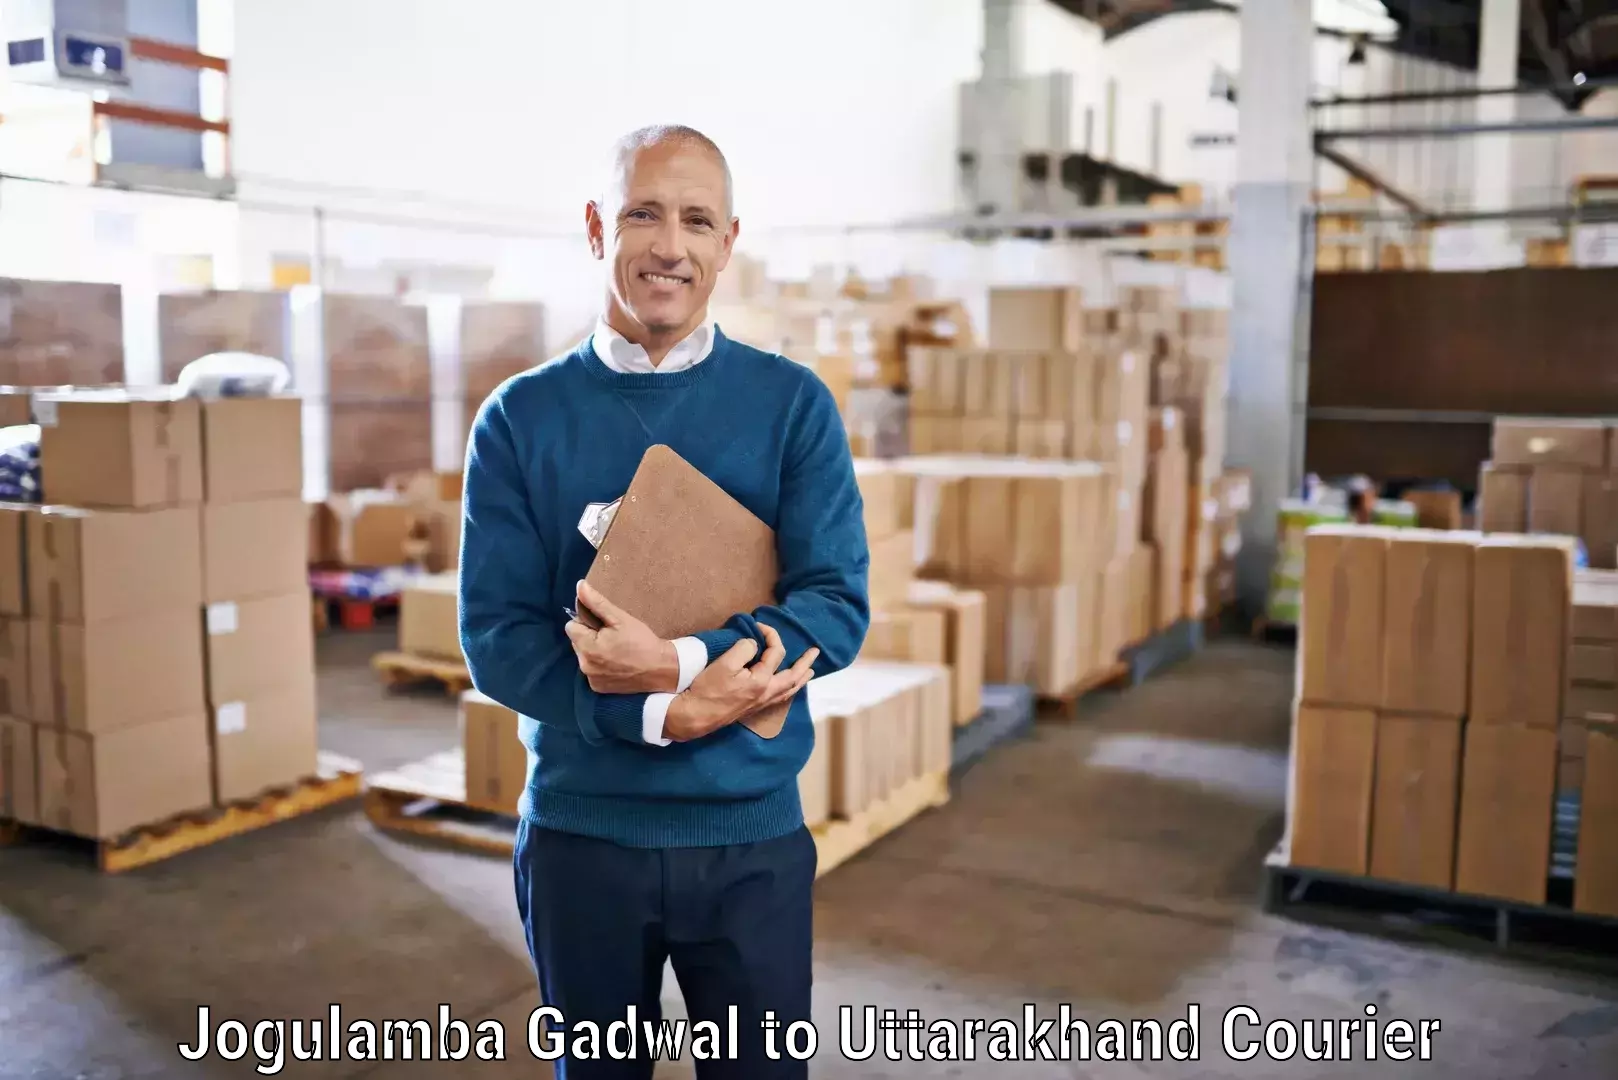 Professional courier handling Jogulamba Gadwal to Udham Singh Nagar